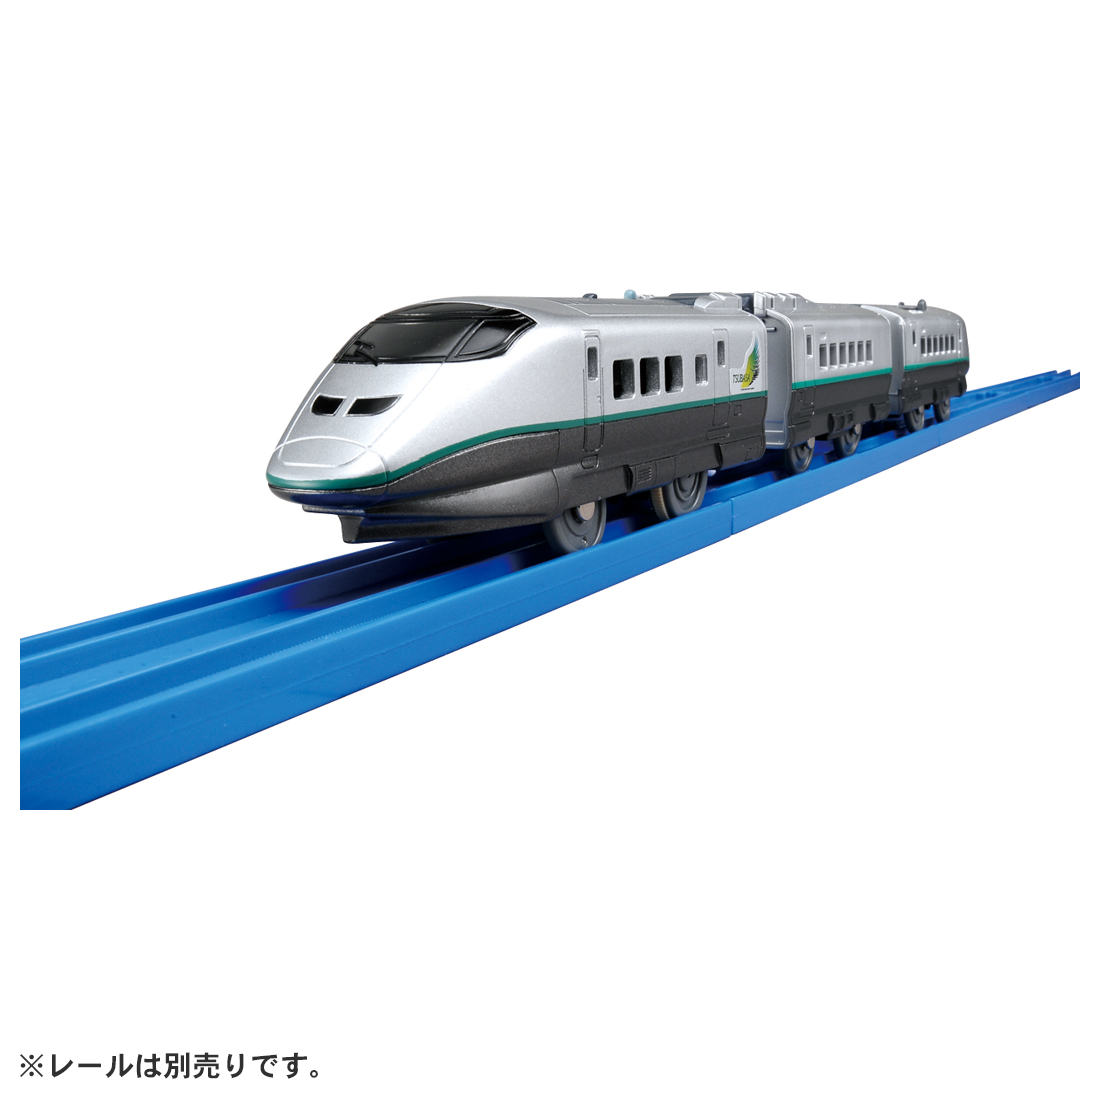 タカラトミー プラレール S-06 E3系新幹線つばさ(連結仕様)